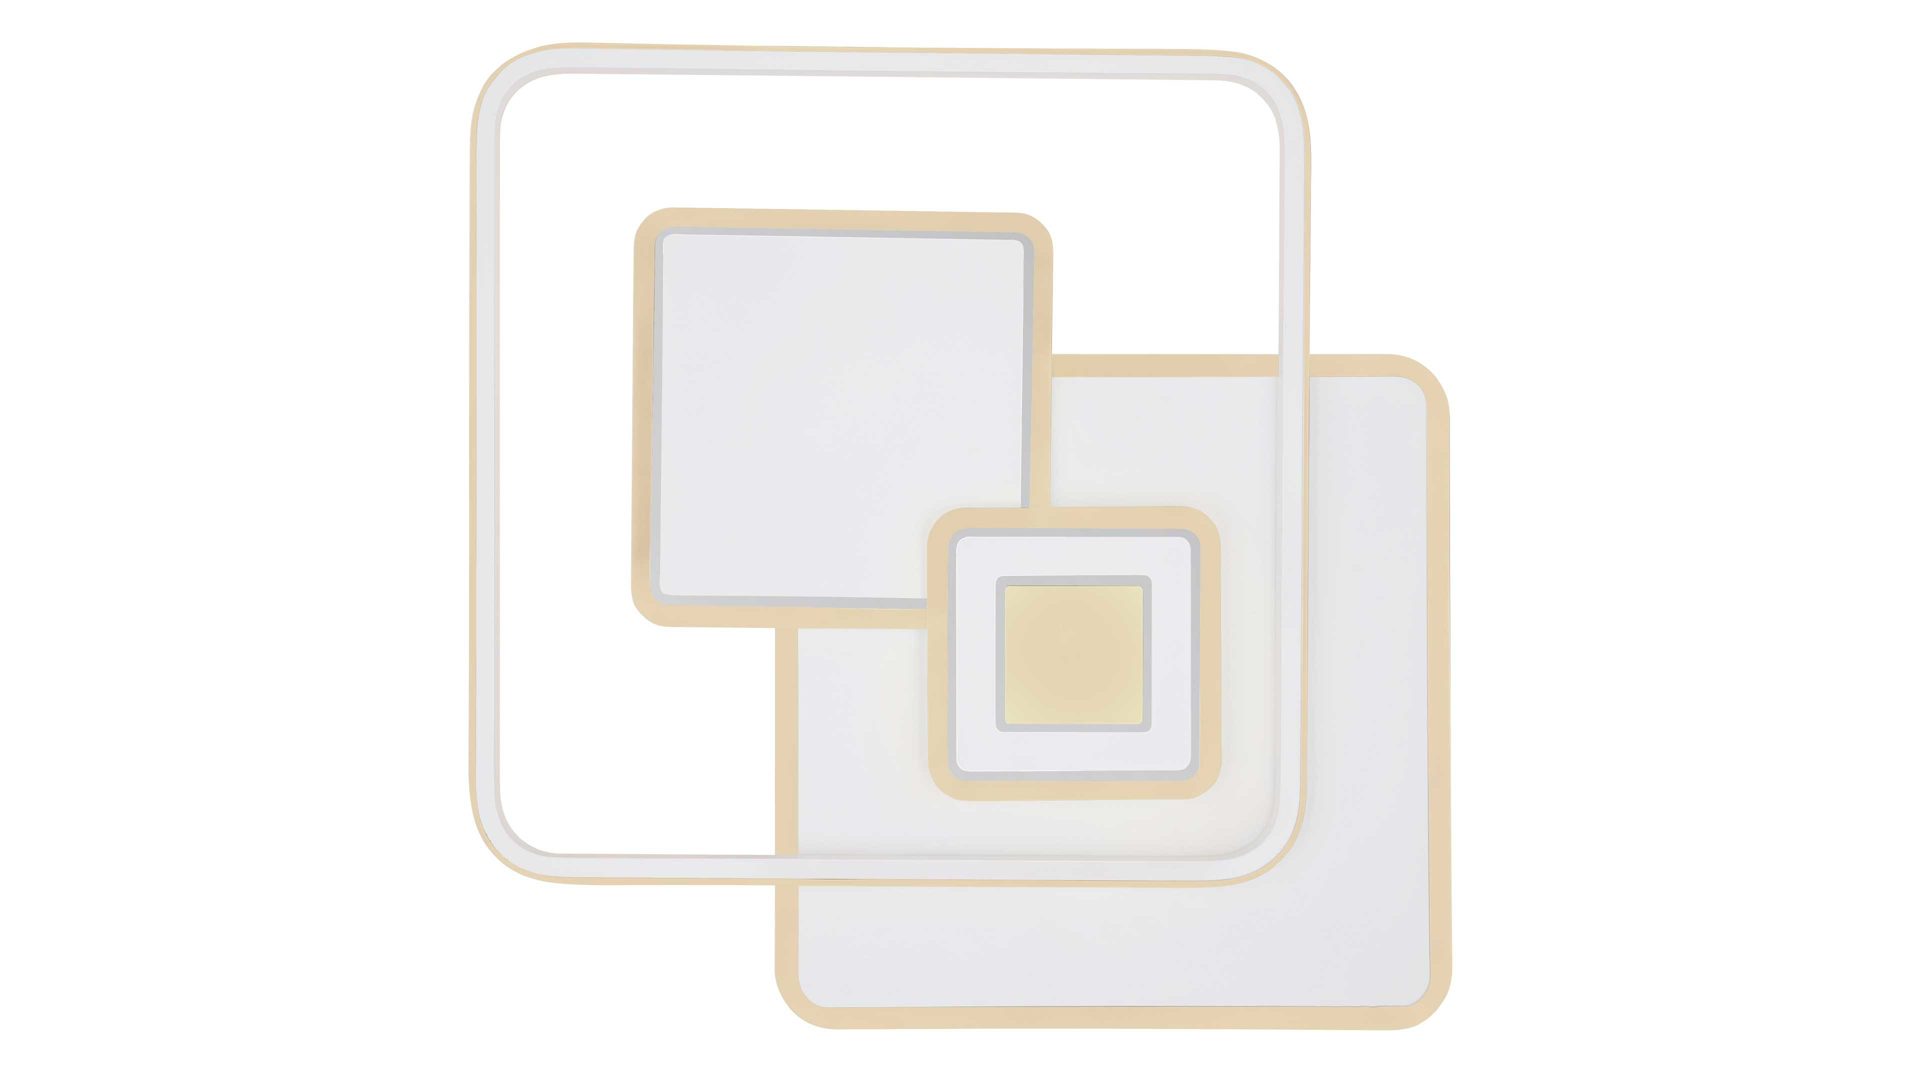 Deckenleuchte Globo lighting aus Metall in Weiß GLOBO Leuchten Serie Roderick - Deckenlampe als SmartLight weißes Metall & opalfarbenes Acryl - ca. 50 x 50 cm